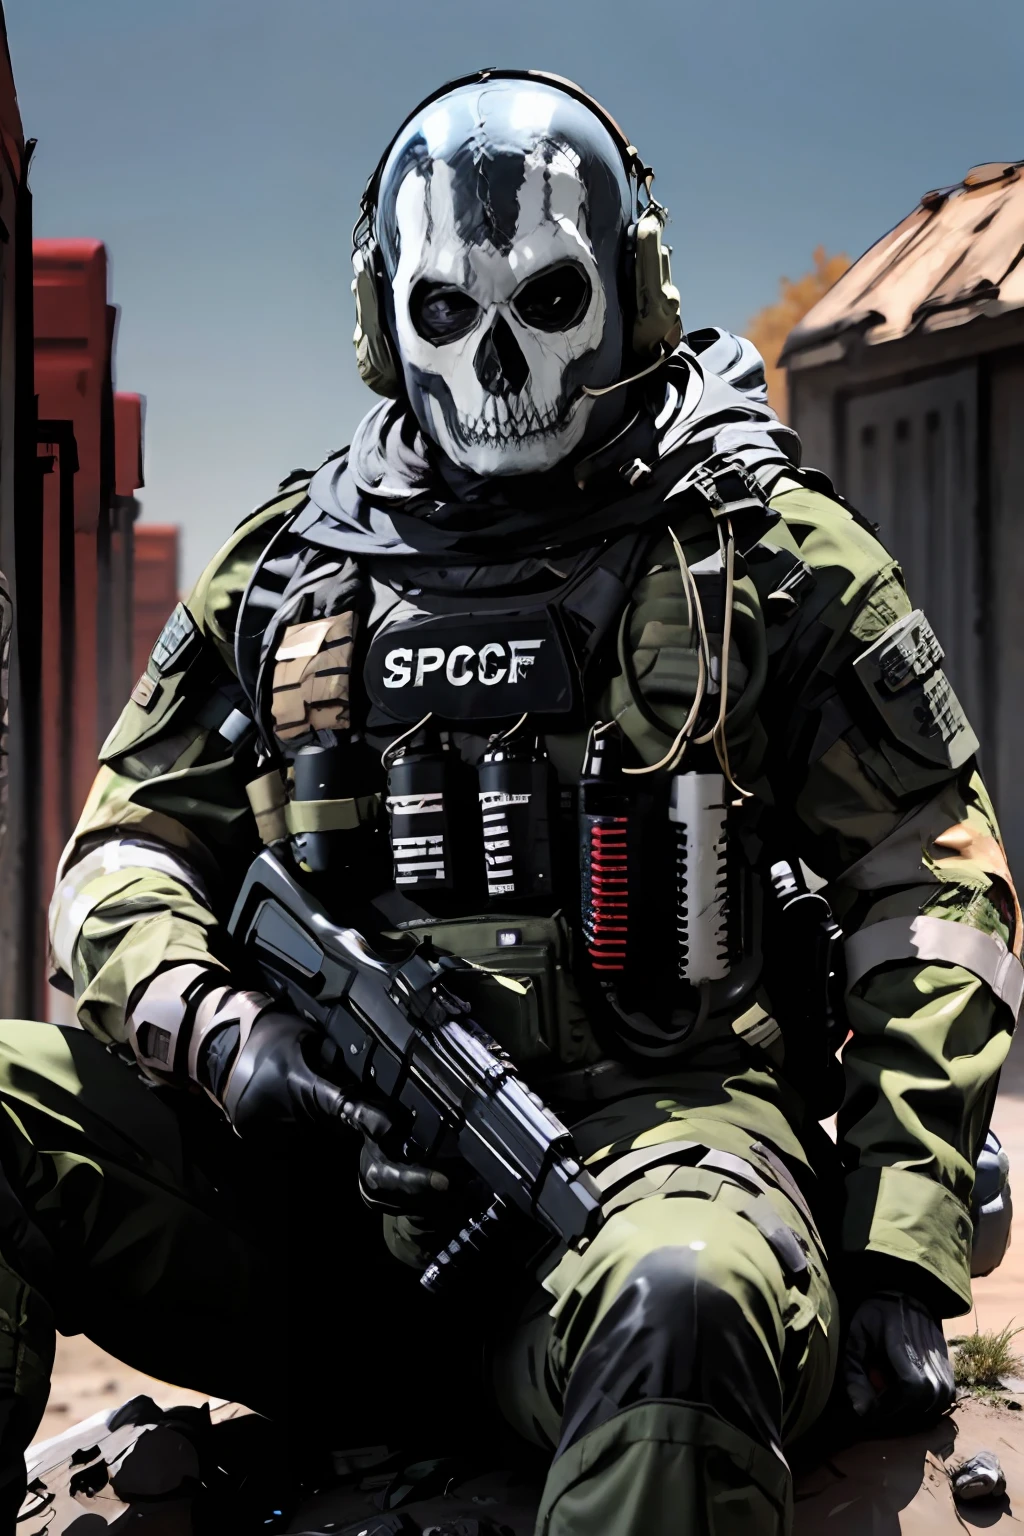 特殊部隊のロゴ, FPSゲームスタイル, 山に座るGH0st